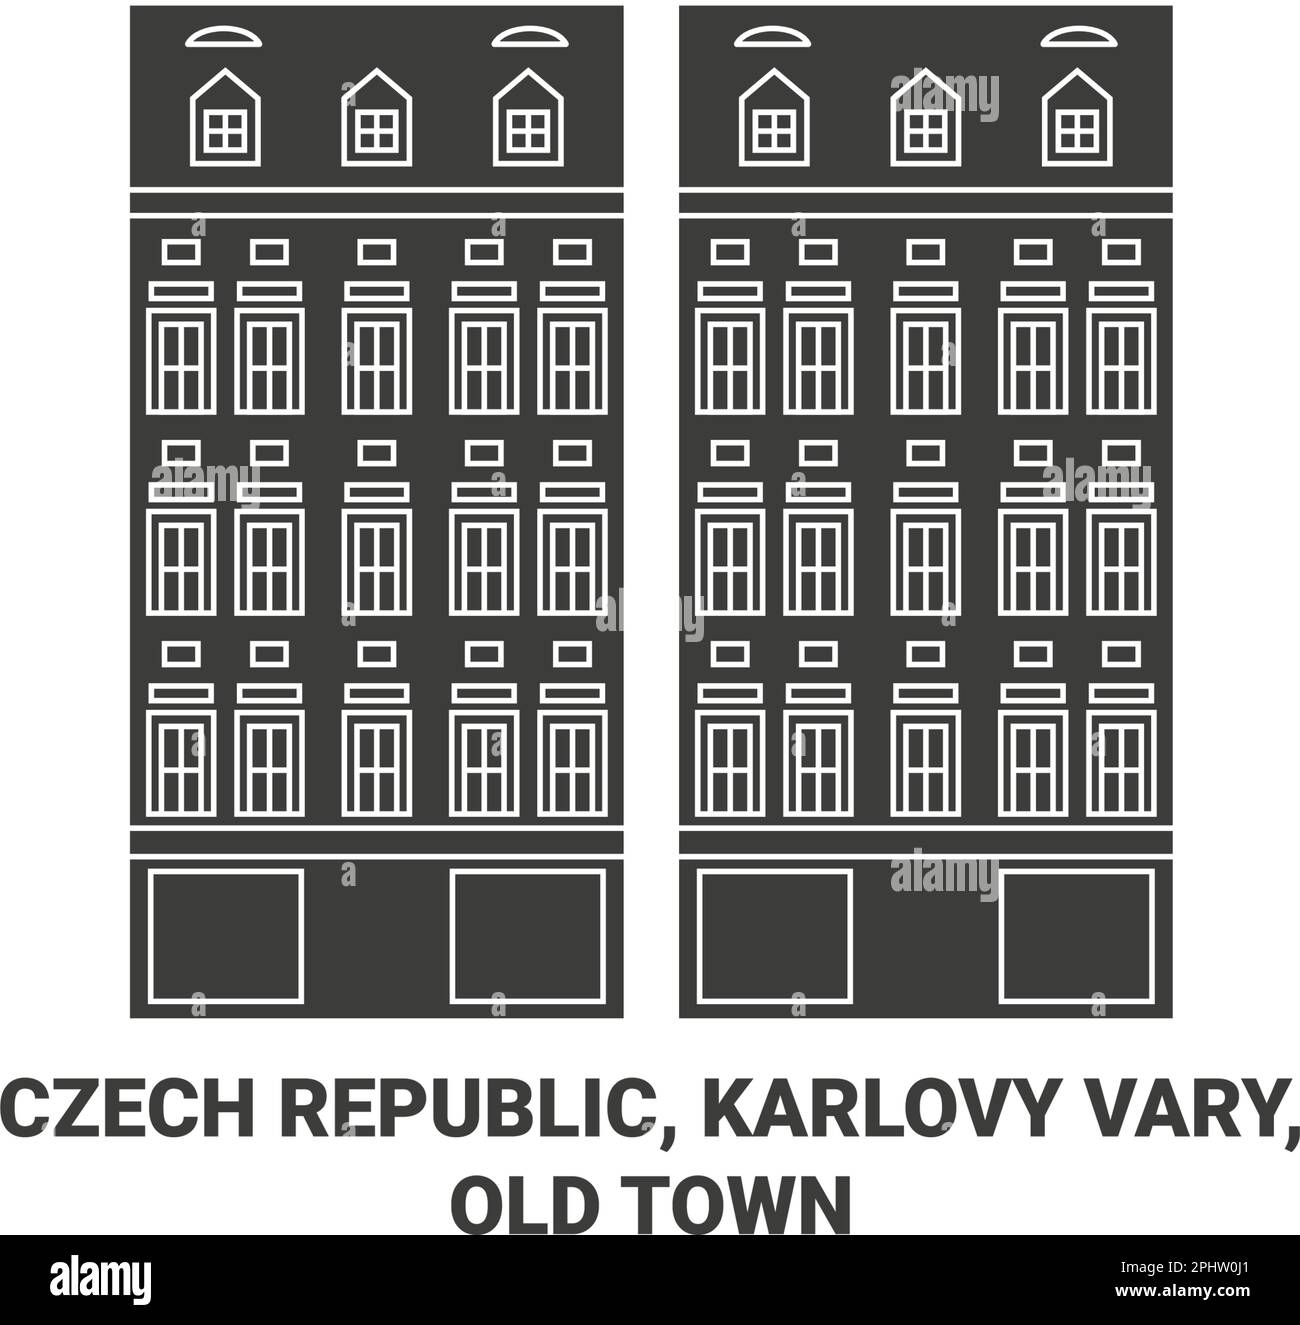 Czech Republic, Karlovy Vary, Old Town travel landmark vector illustration Stock Vector